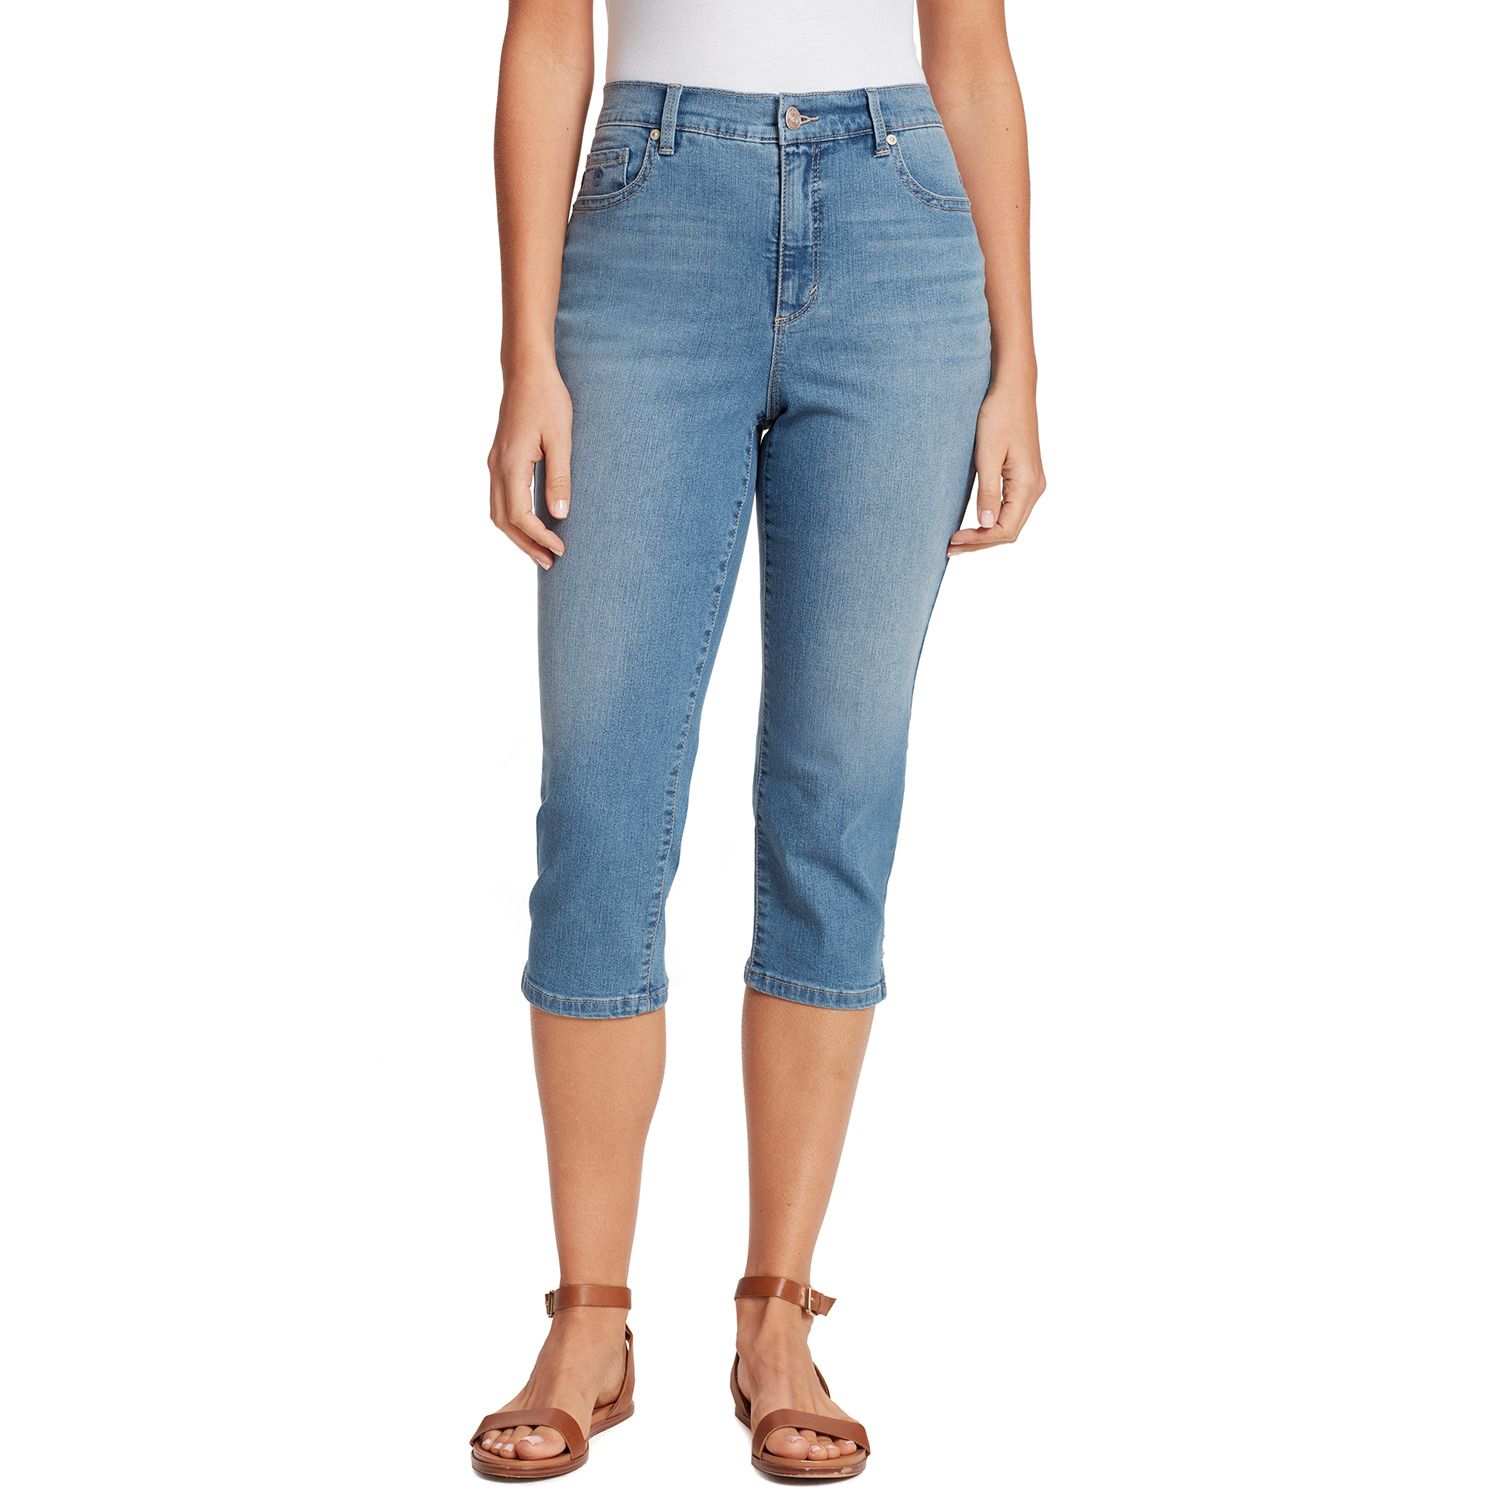 jeans capri for womens online